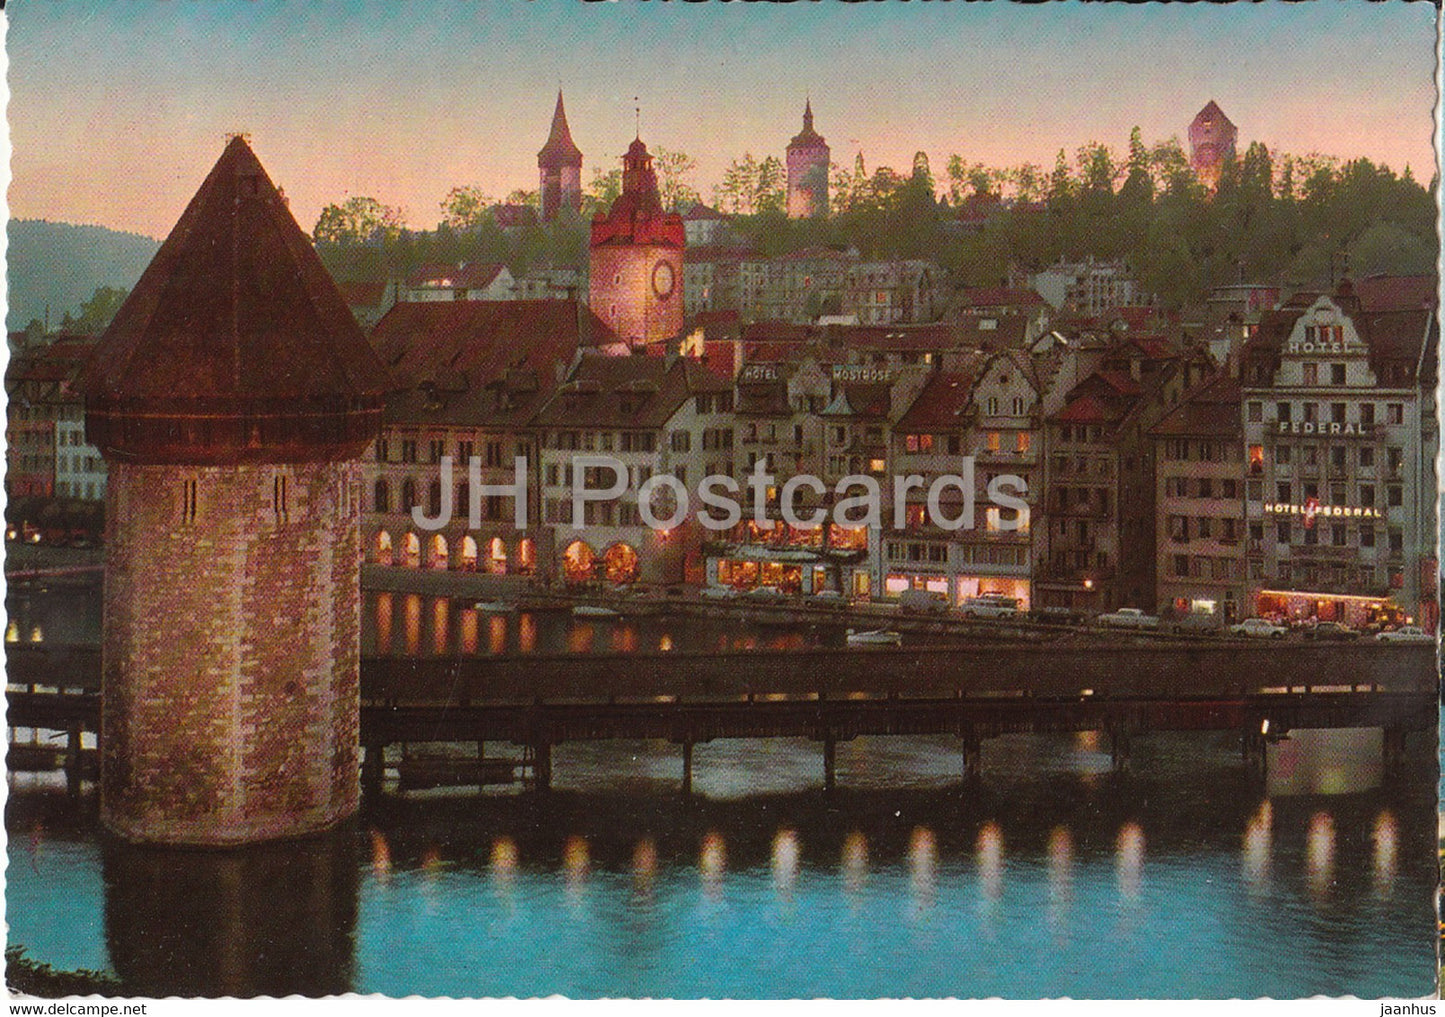 Lucerne - Luzern - Altstadt mit Kapellbrucke und Museggturmen - 1968 - Switzerland - used - JH Postcards